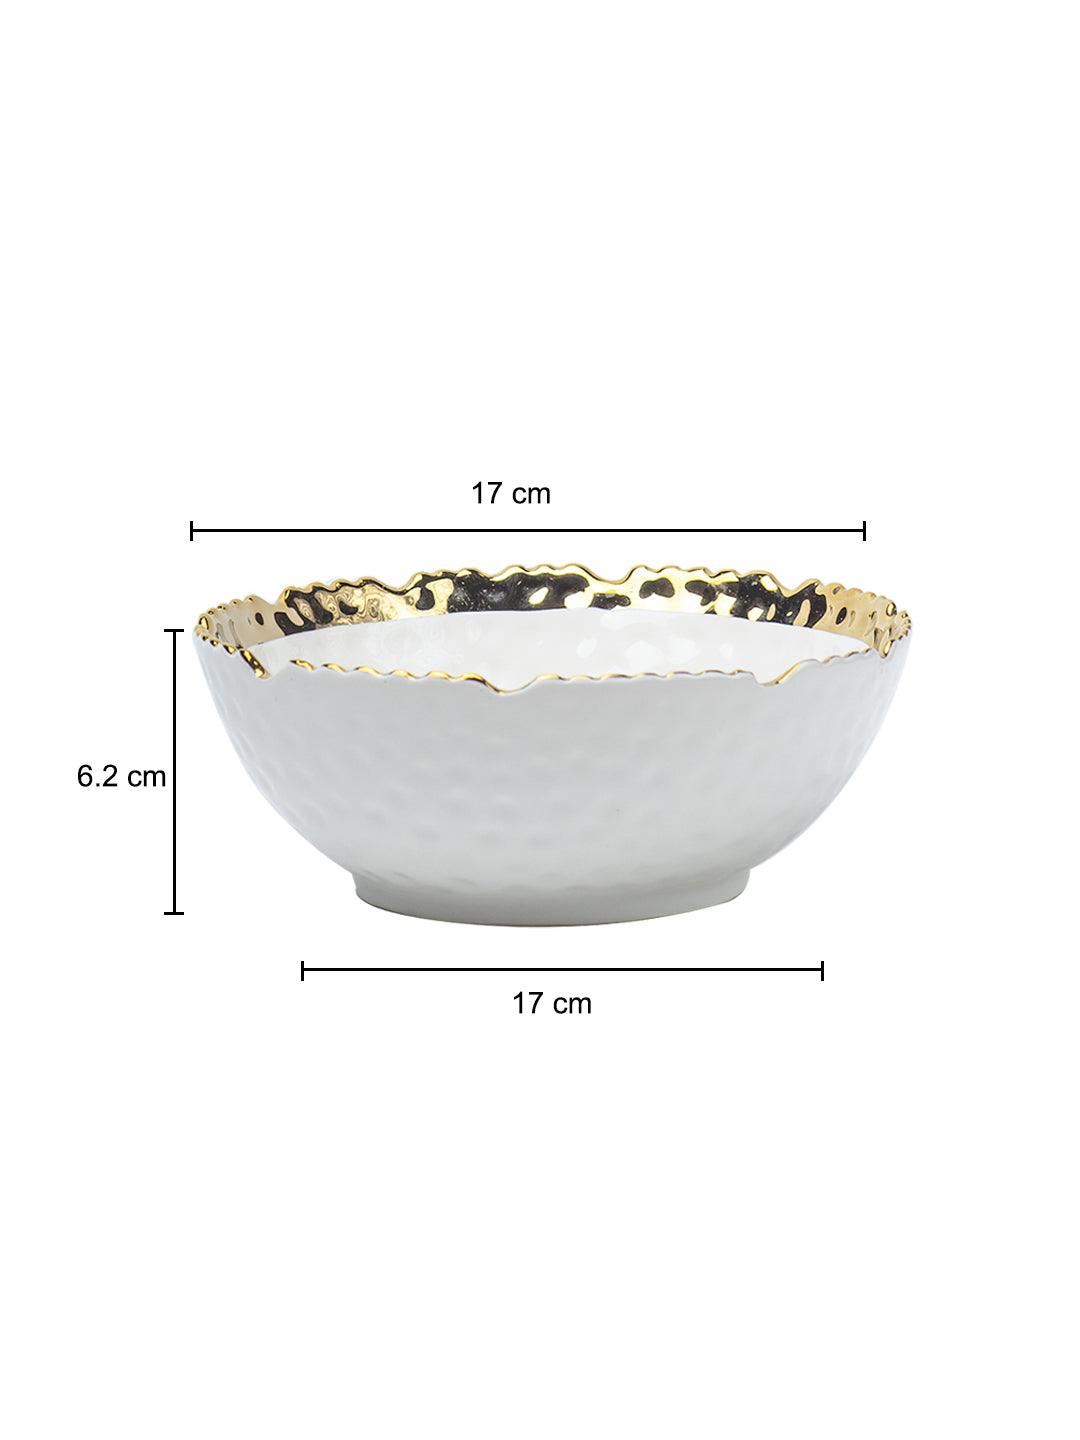 Antique Off White Ceramic Round Serving Dish - 18 x 18 x 7CM - 5